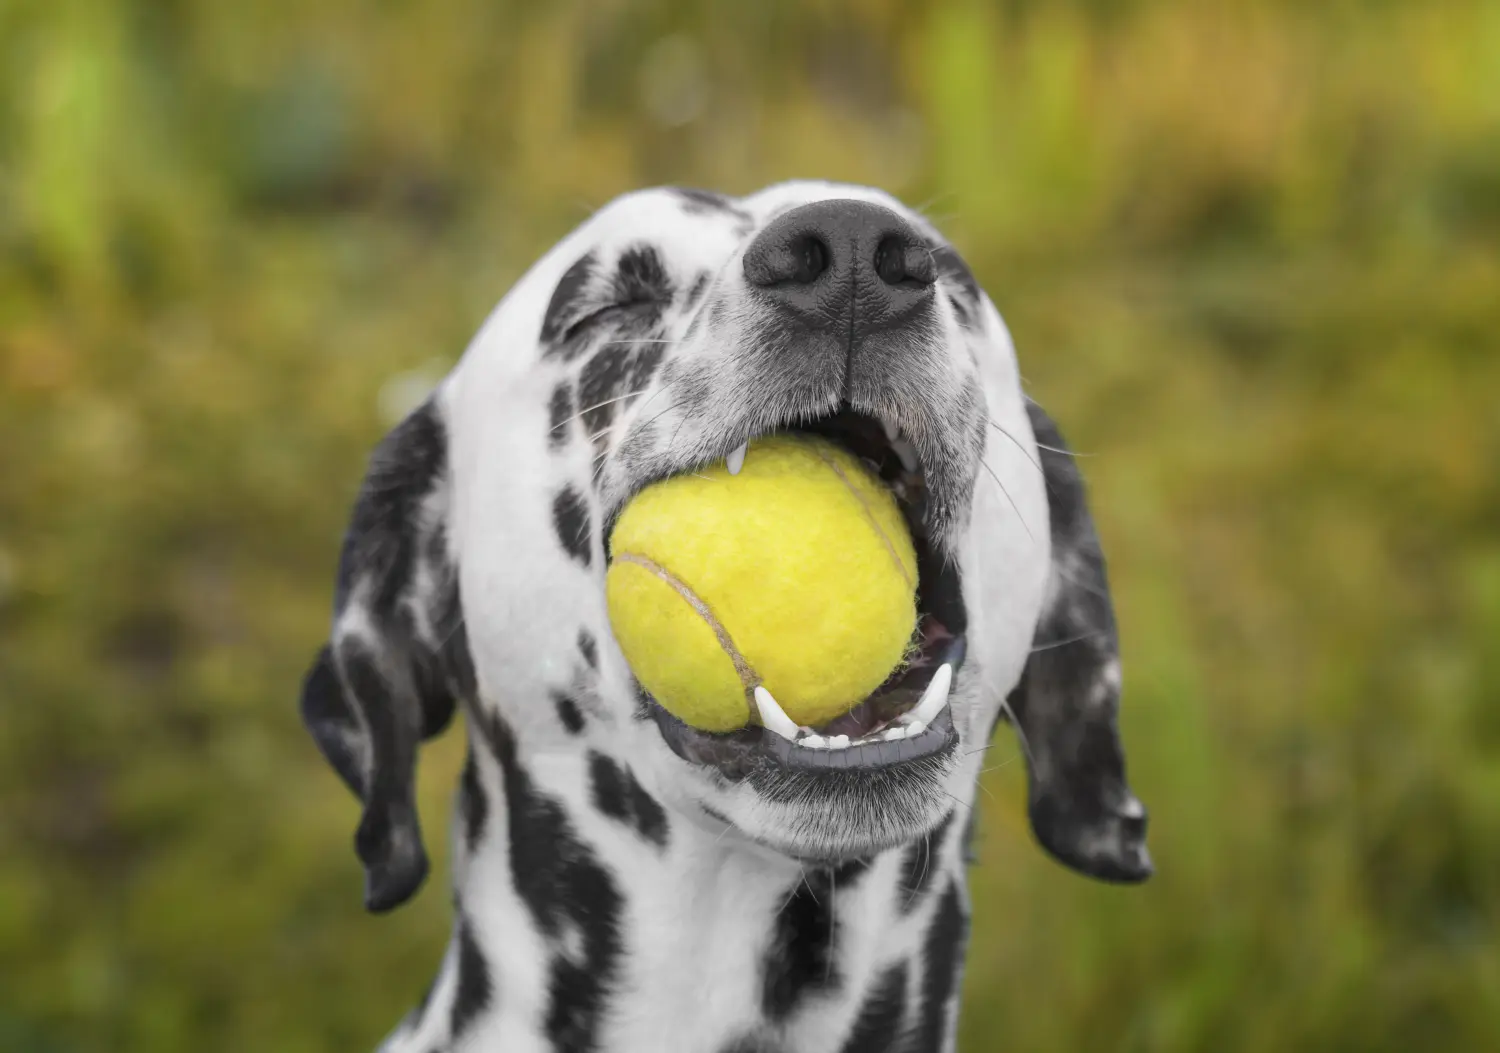 Wie beschäftige ich meinen Dalmatiner sinnvoll? Hier hat ein Dalmatiner mächtig Spaß mit einem Tennisball.